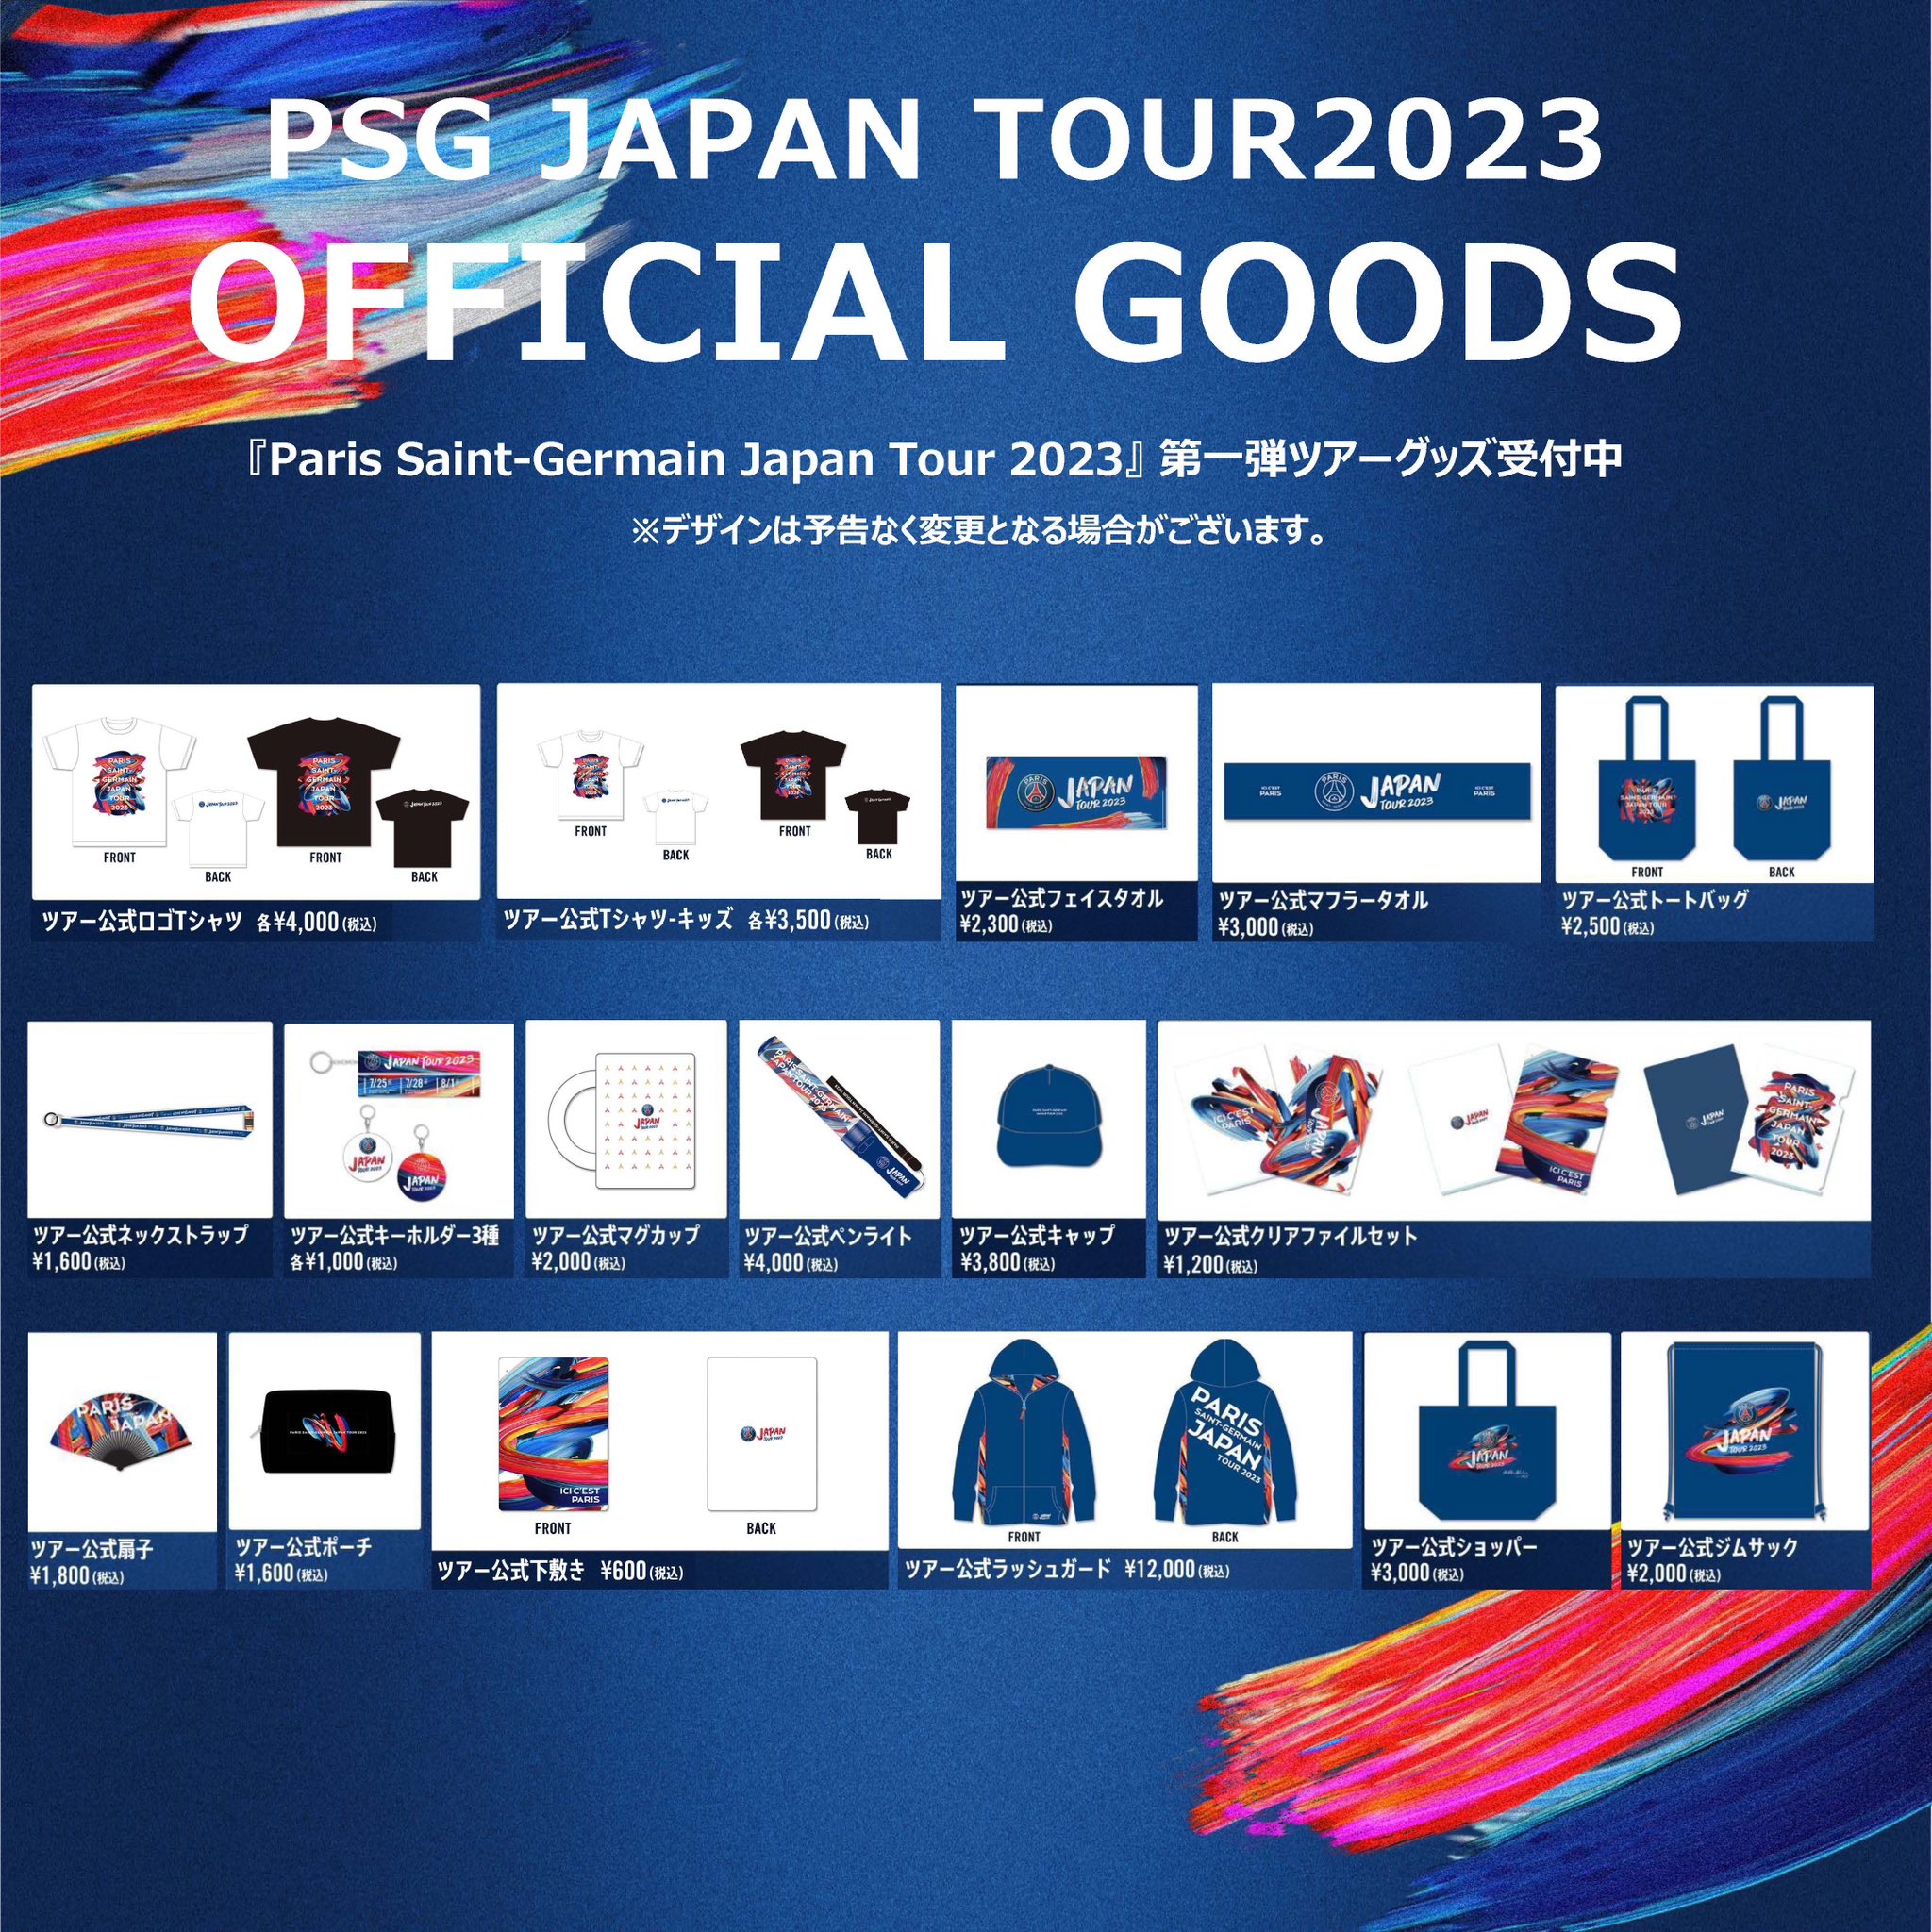 PSG JAPAN TOUR 2023 on X: 